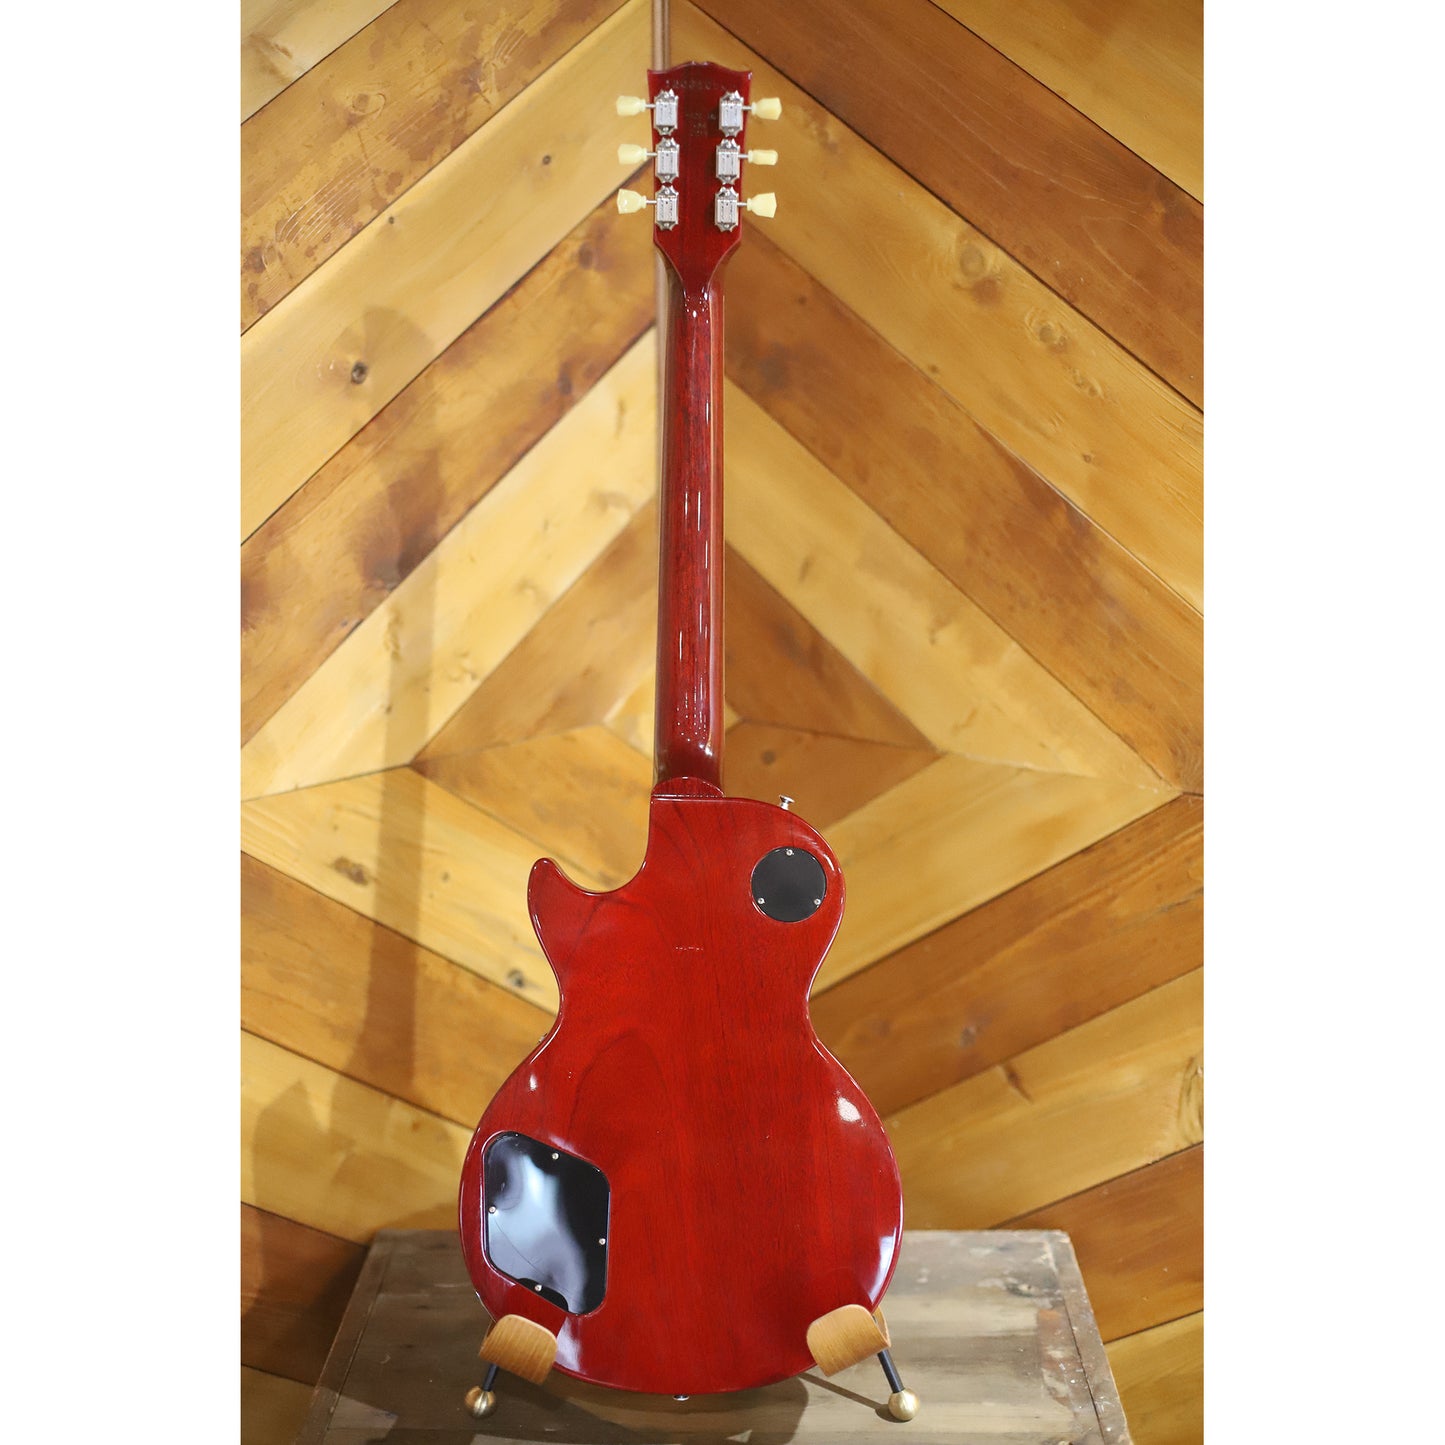 2011 Gibson Les Paul HoneyBurst